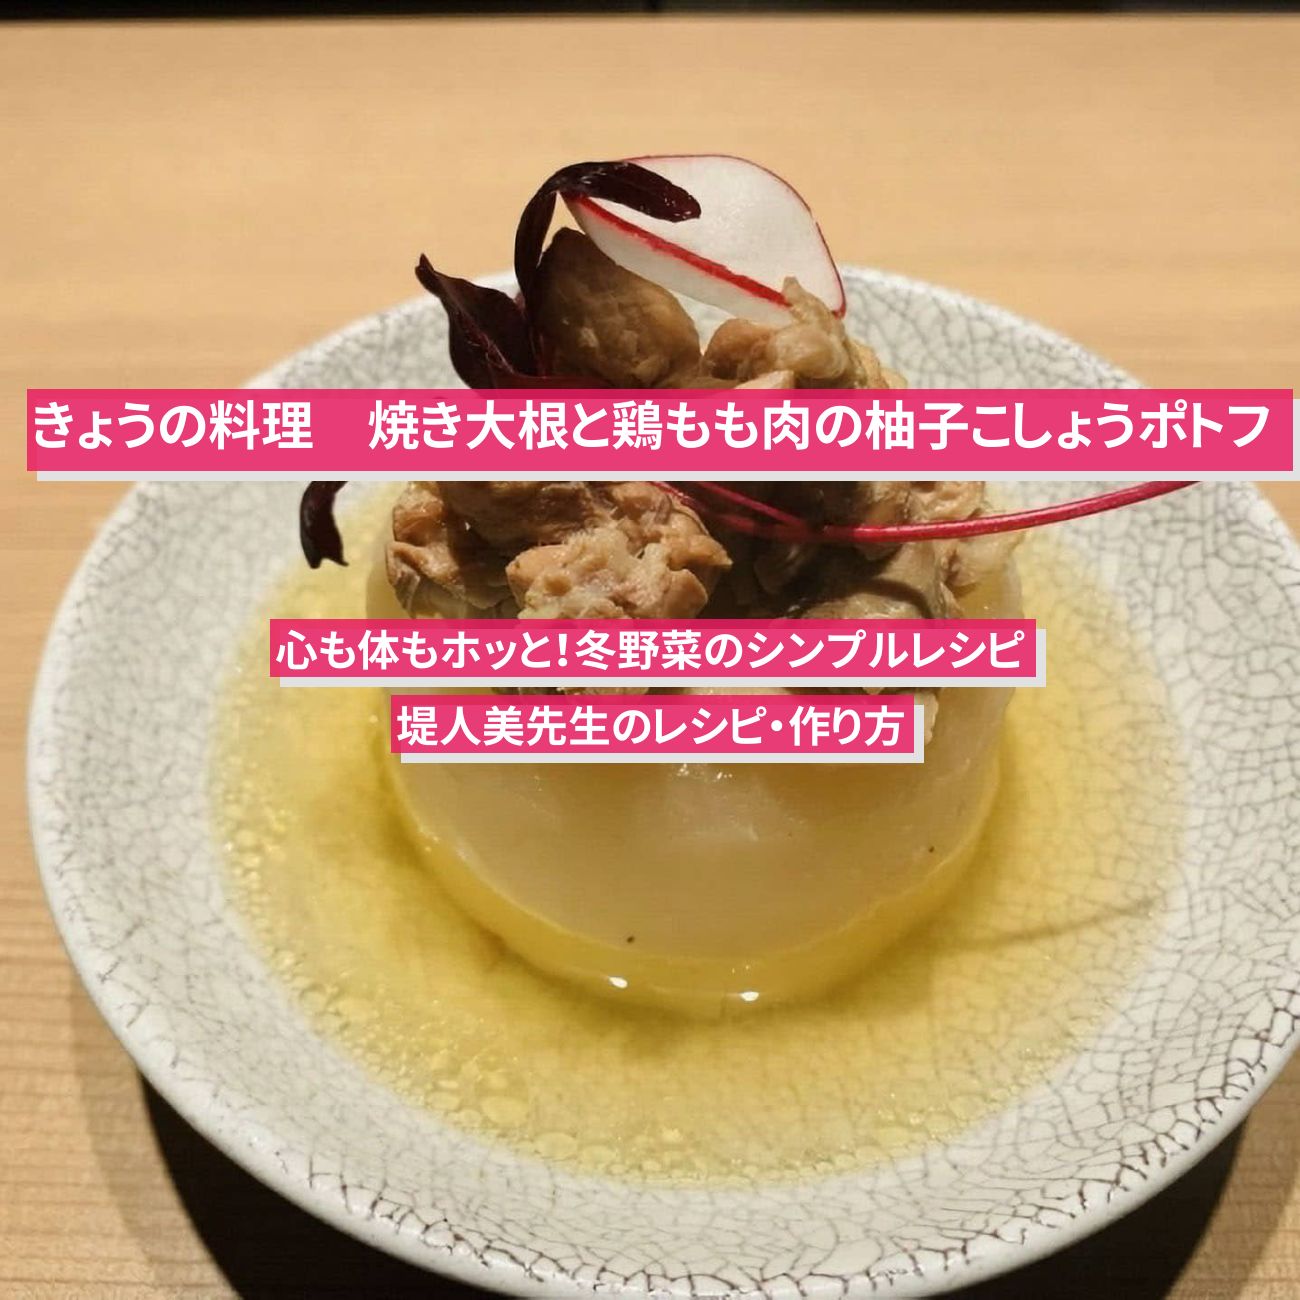 【きょうの料理】『焼き大根と鶏もも肉の柚子こしょうポトフ』堤人美先生のレシピ・作り方